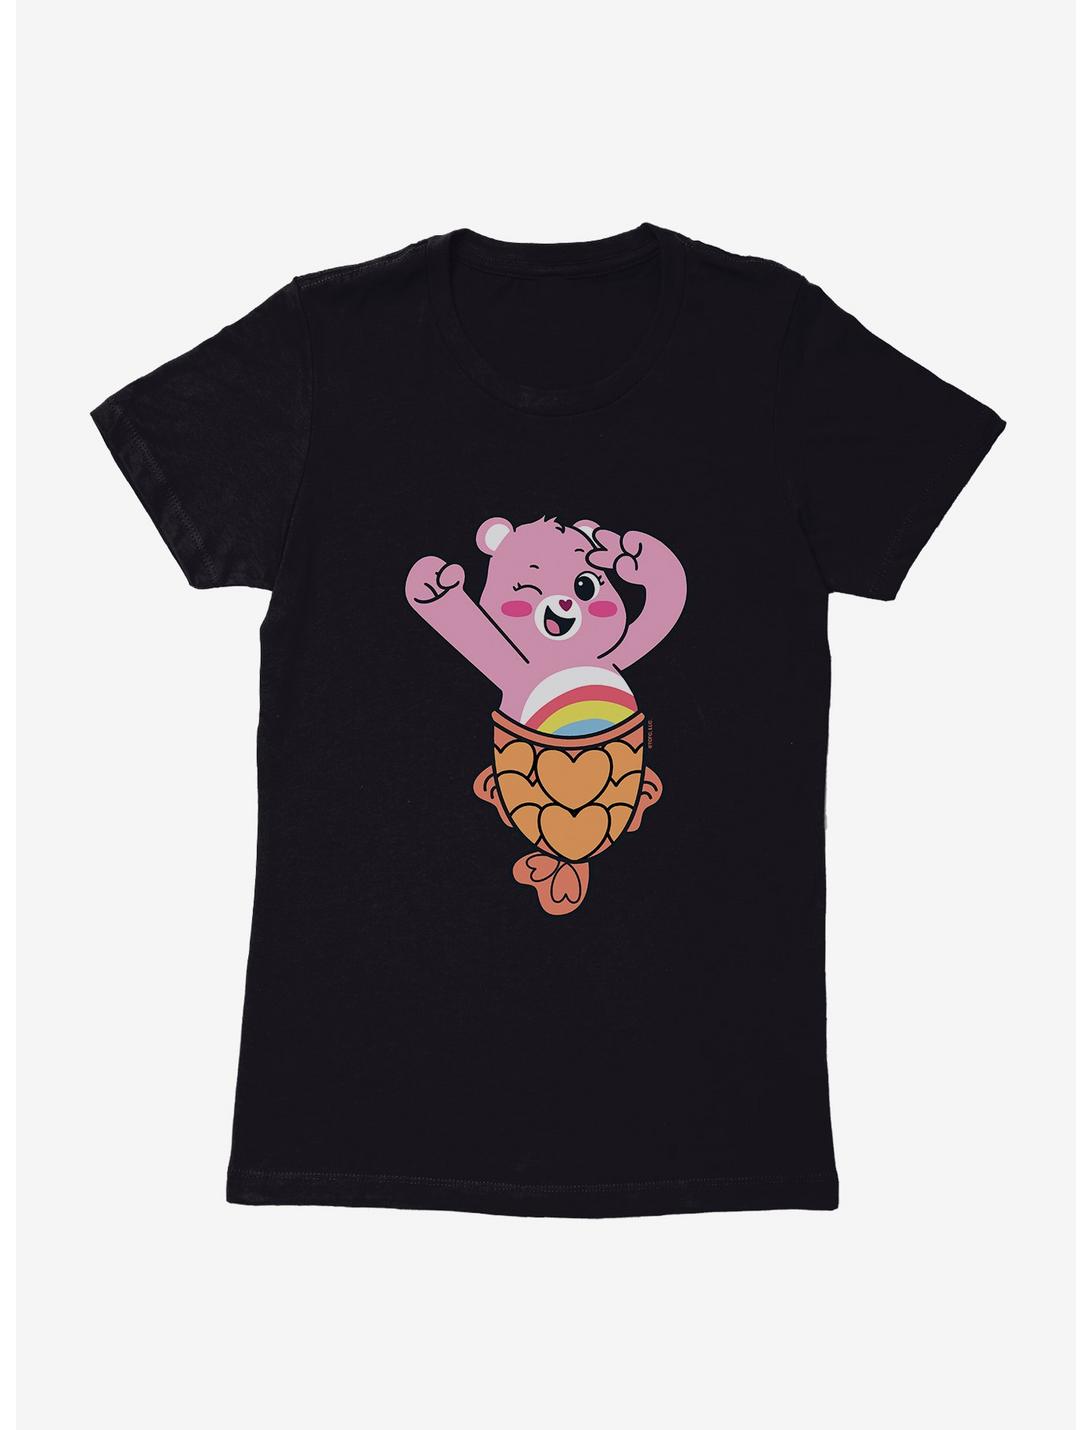 Care Bears Cheer Bear Taiyaki Time Womens T-Shirt, BLACK, hi-res